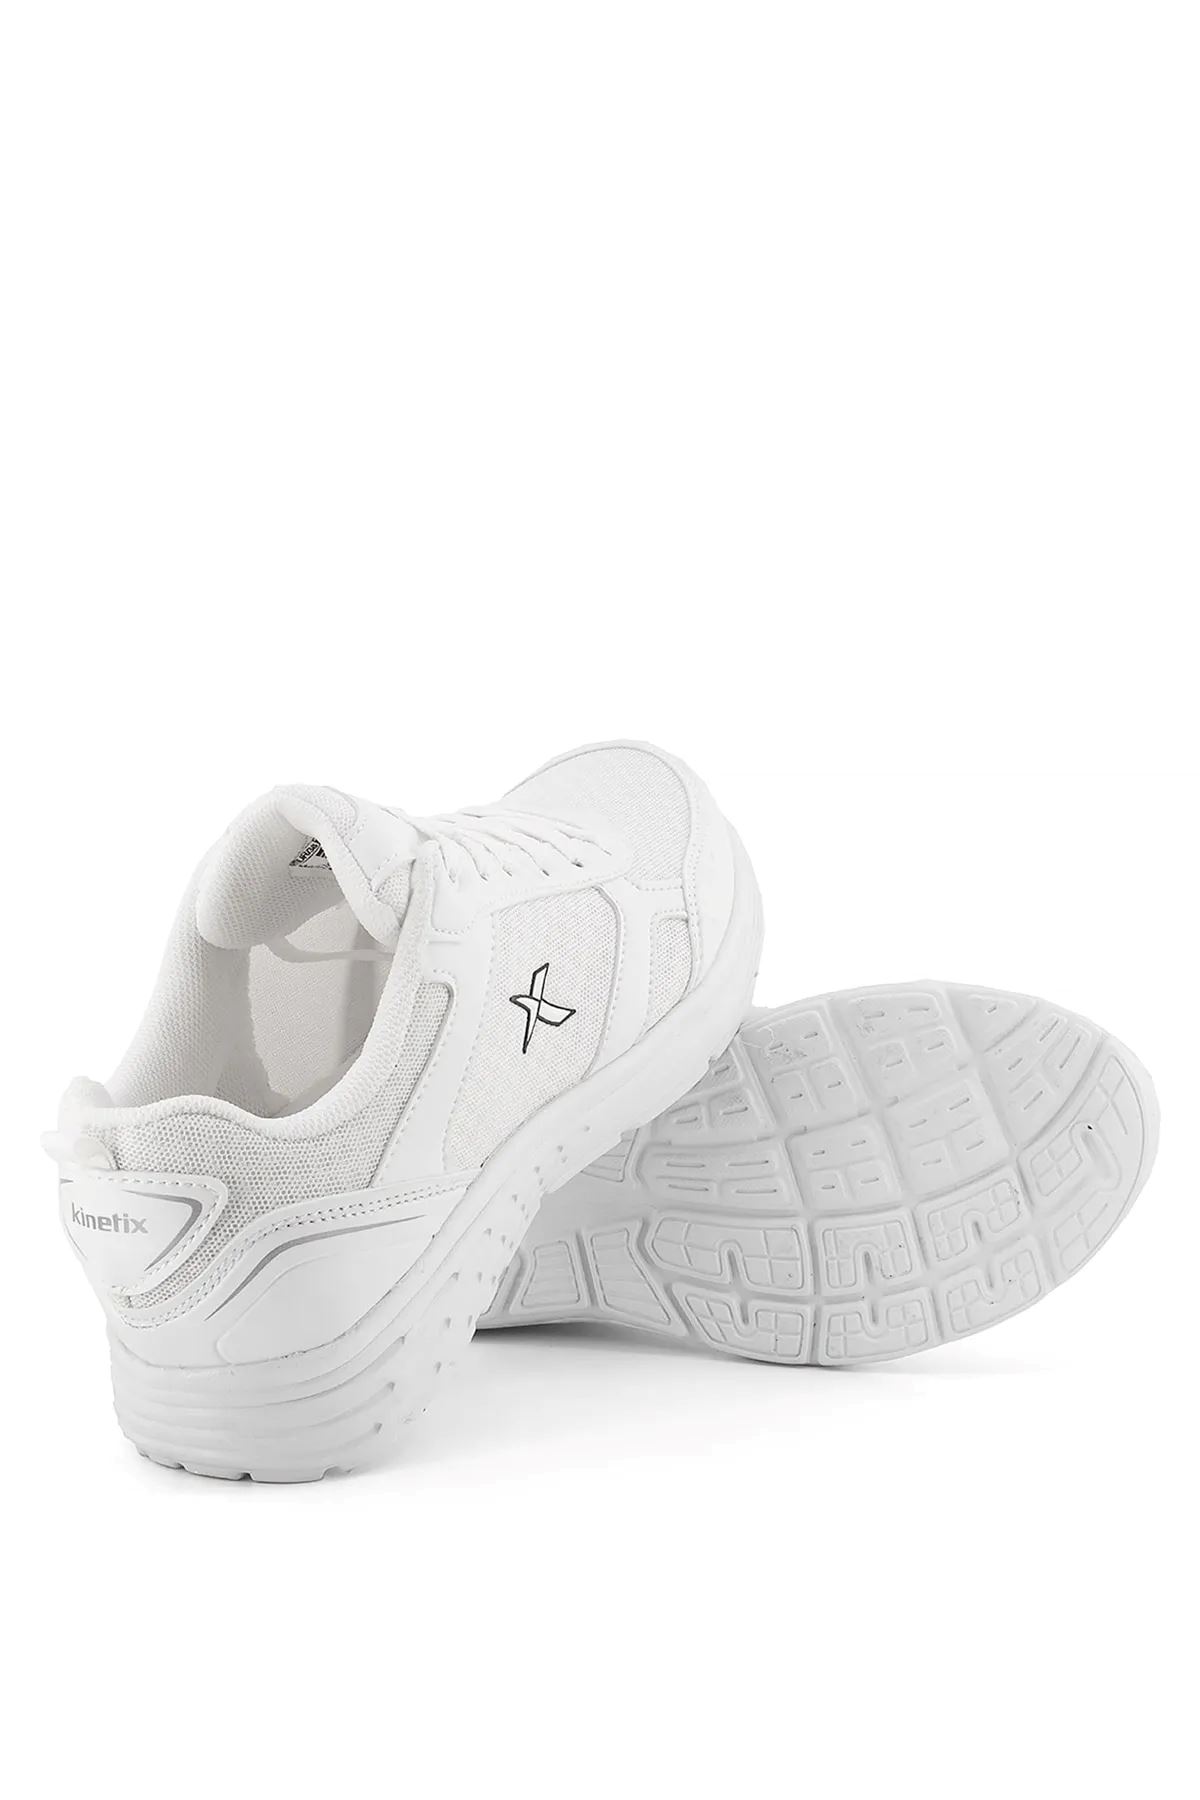 Apex Tx 3Fx Kinetix Kadın Beyaz Spor Ayakkabı - 101333718